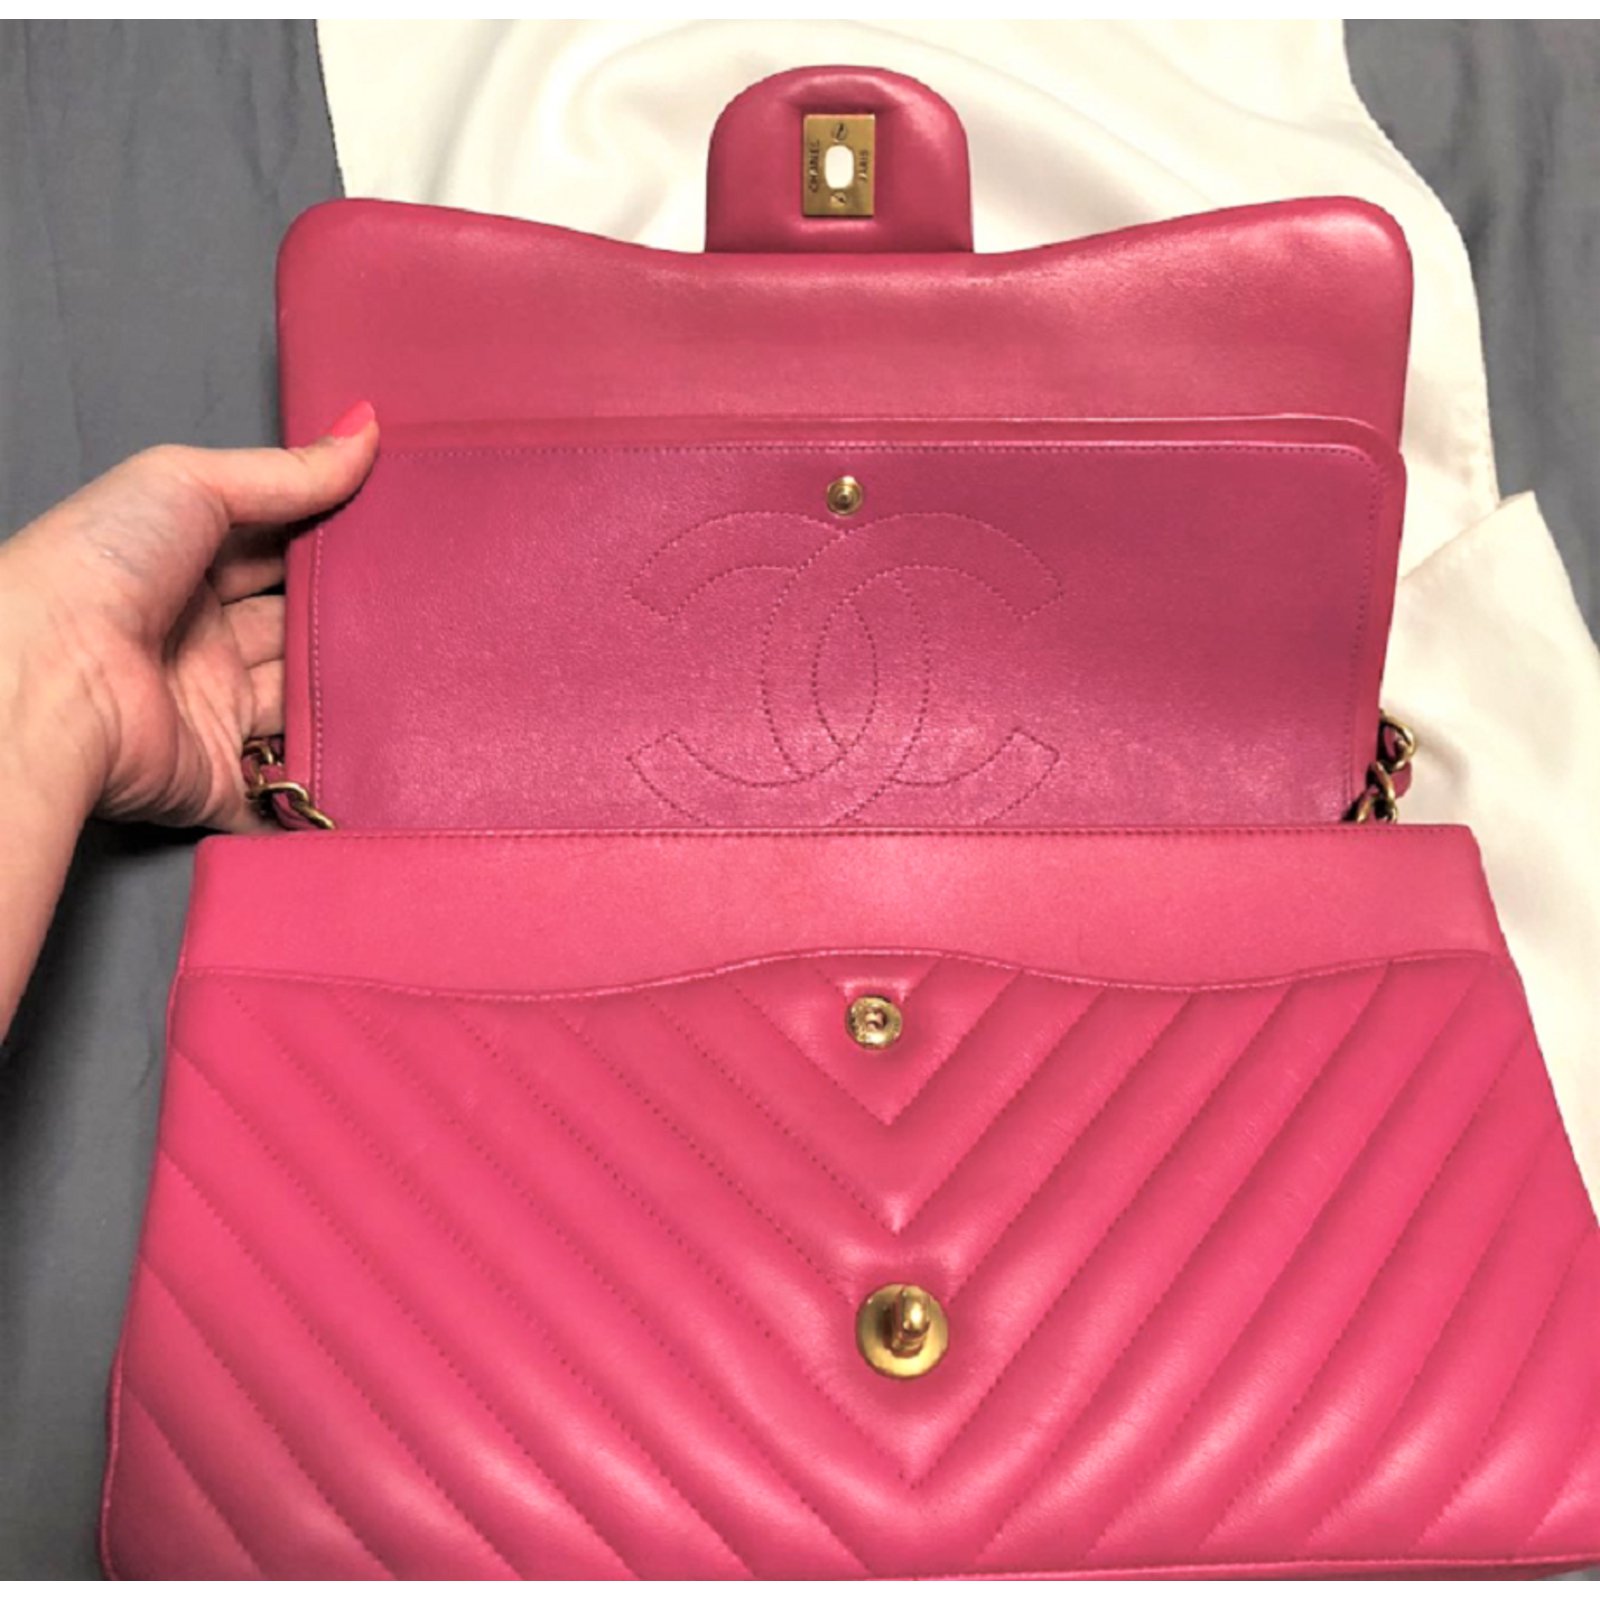 C&C Sweden Women's Paparazzi Pink Patent Leather Nursing Clogs